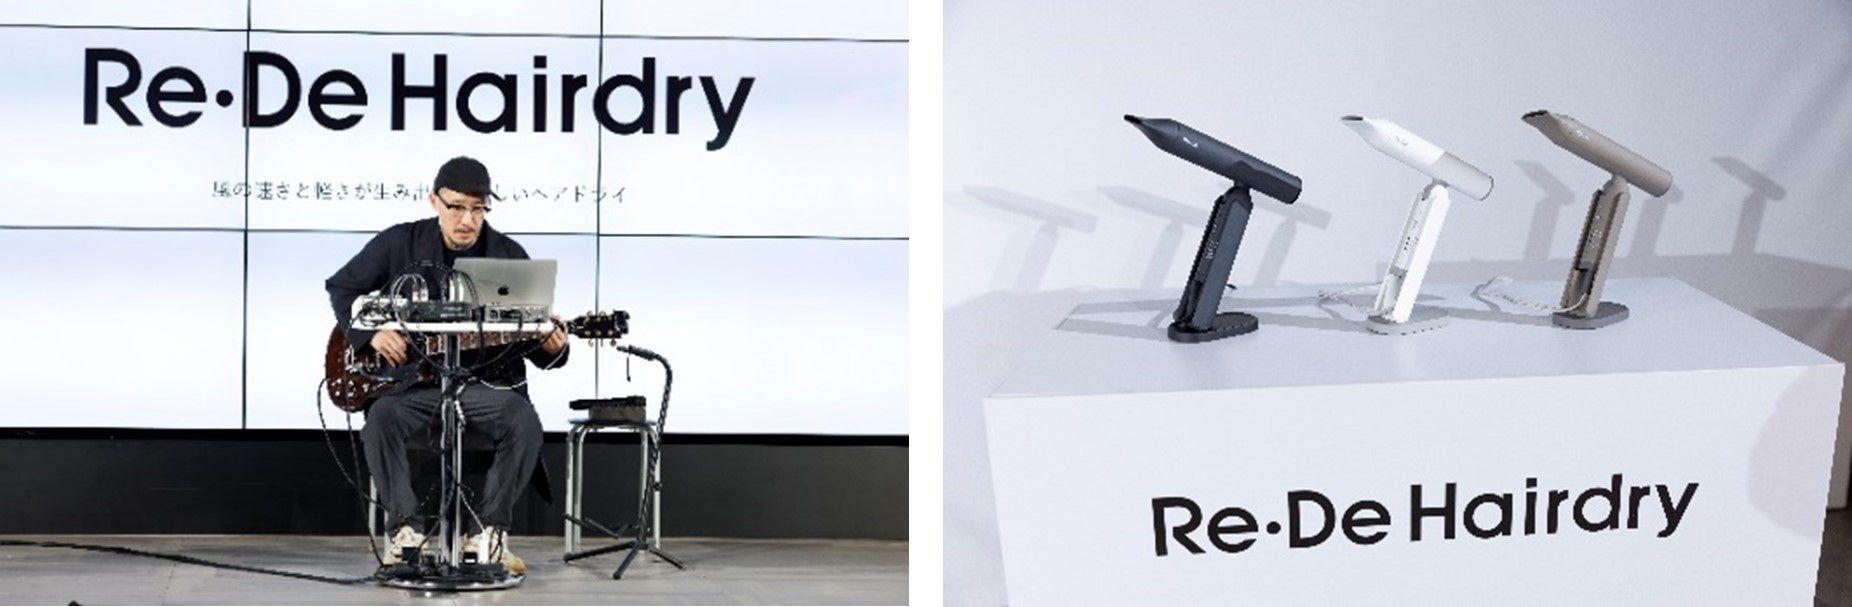 「Re・De」が心地を整えるウェルネスブランドへ刷新。圧倒的な風と軽さを実現した革新的ドライヤー「Re・De Hairdry」や、ユーザーとリデザインを繋ぐオウンドメディア『ReDESIGN』を発表のサブ画像10